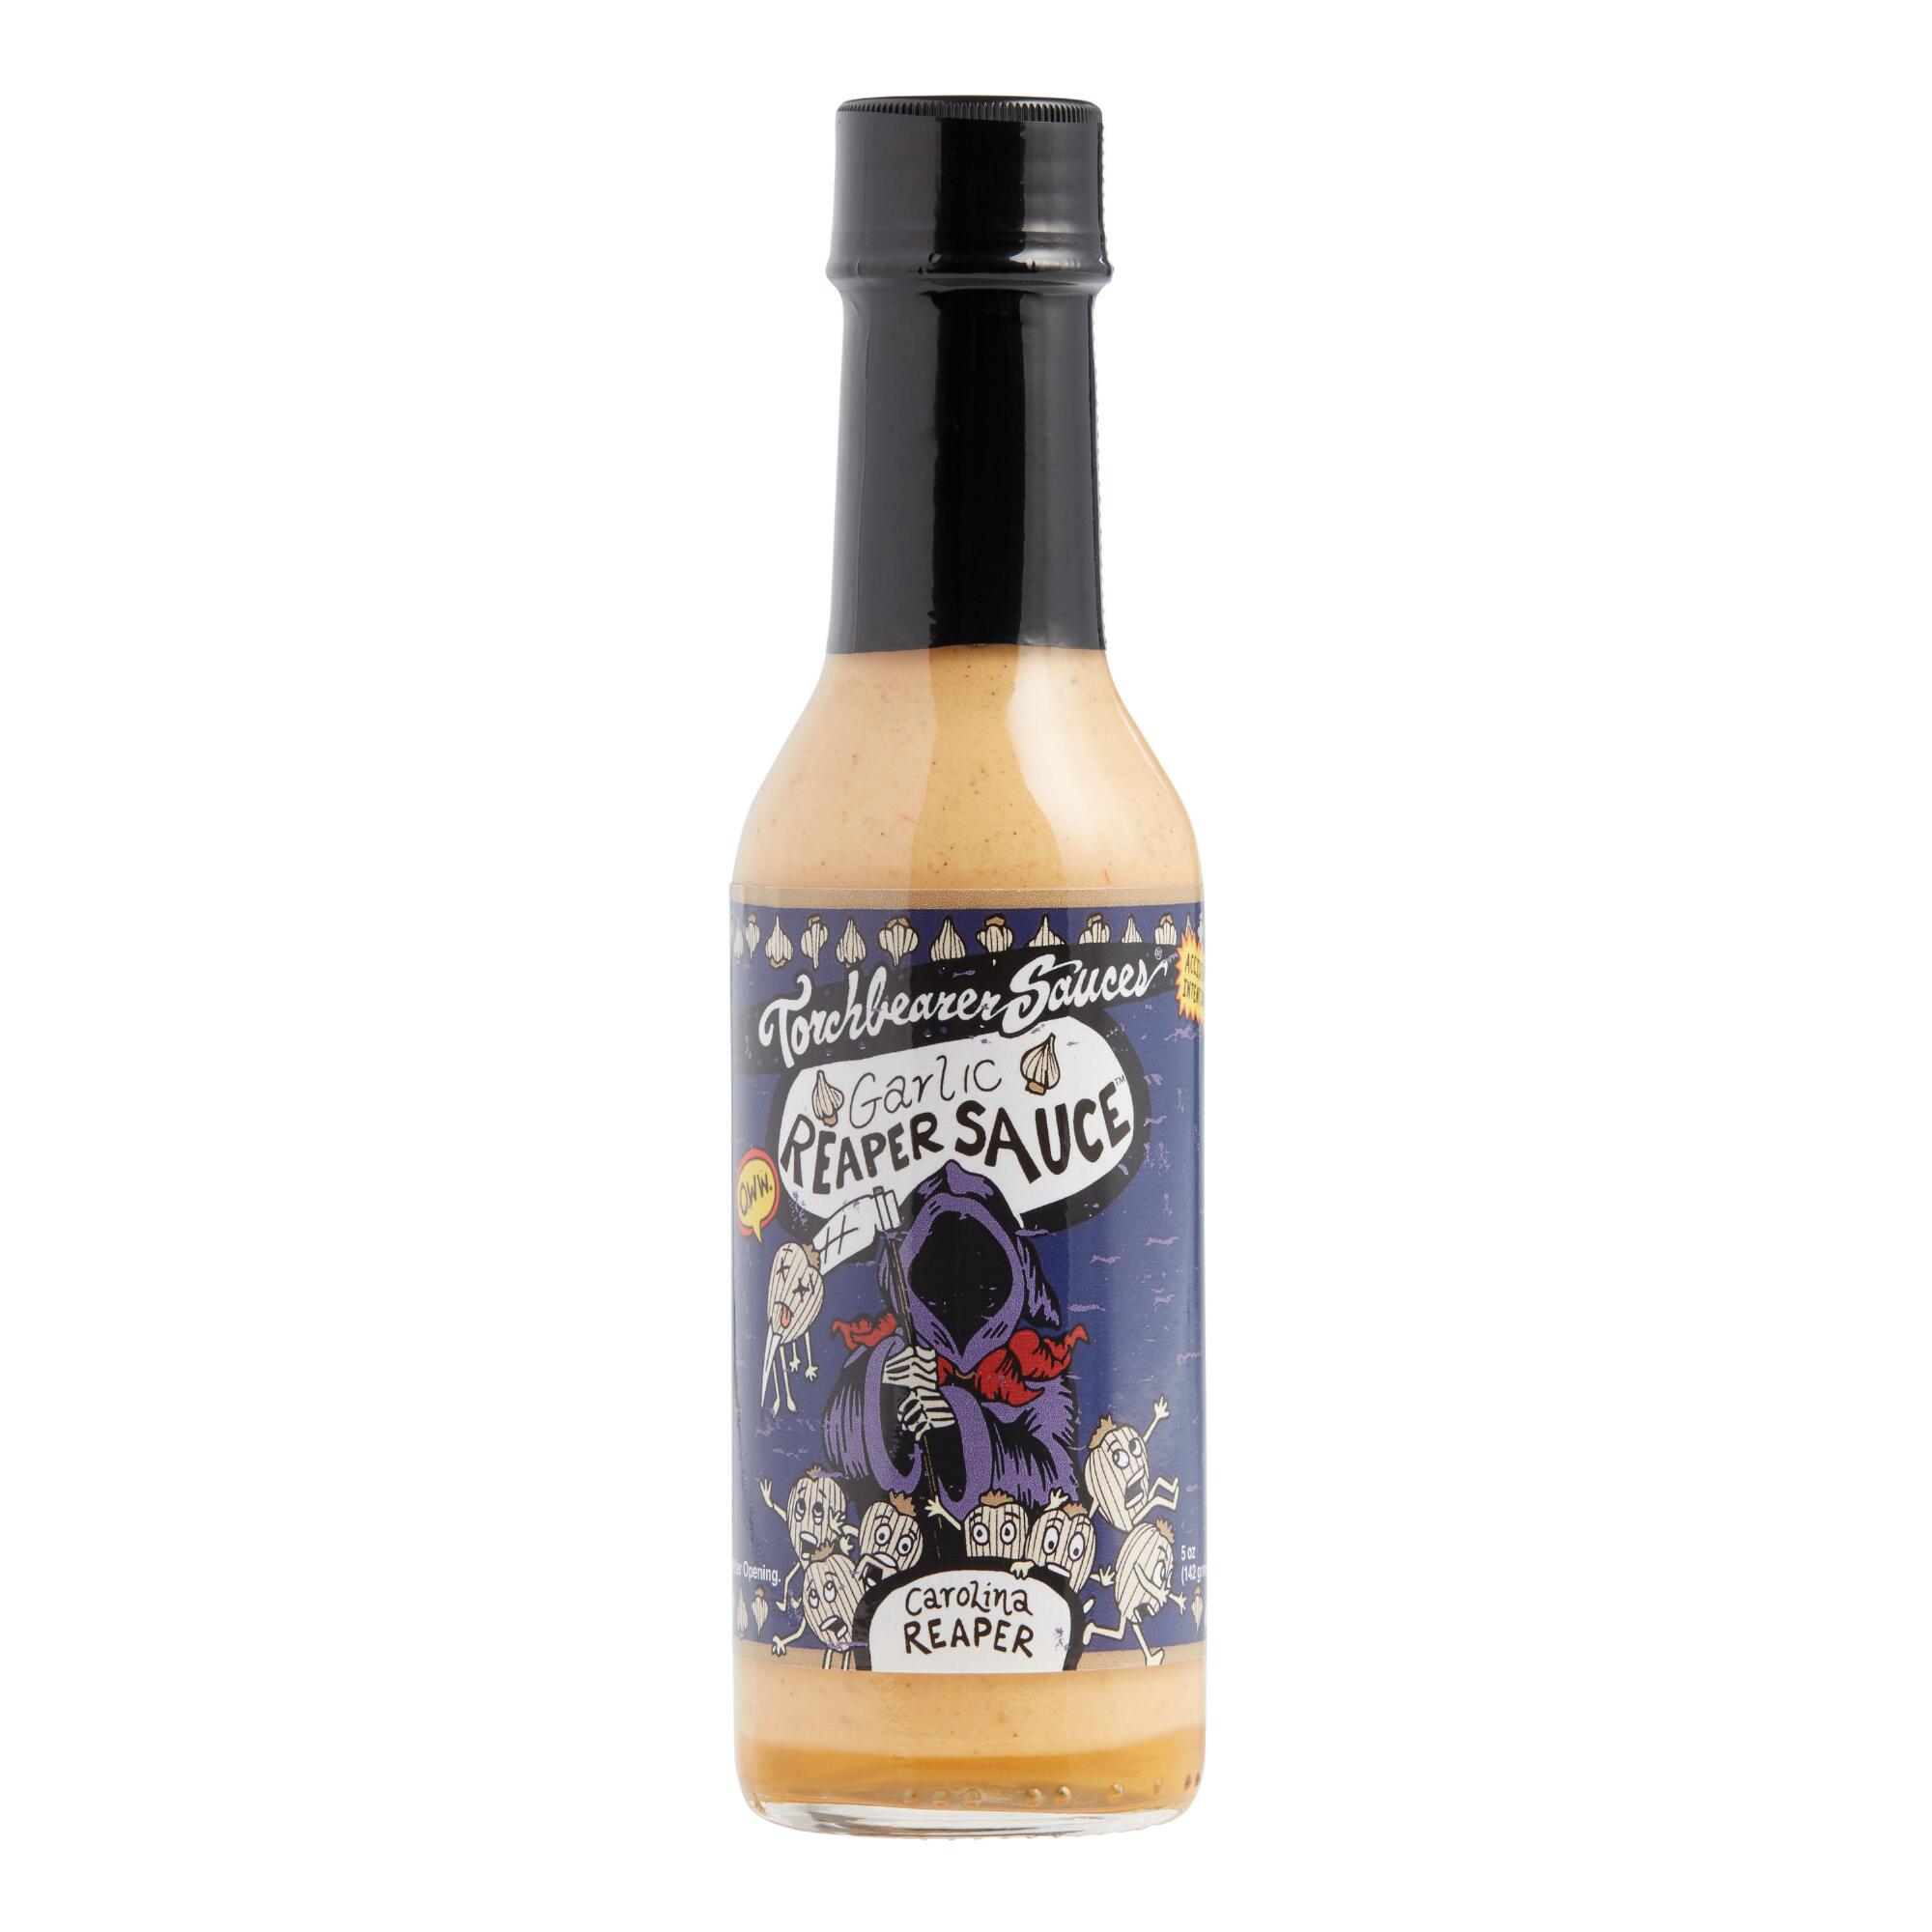 Torchbearer Sauces Garlic Reaper Wing Sauce by World Market